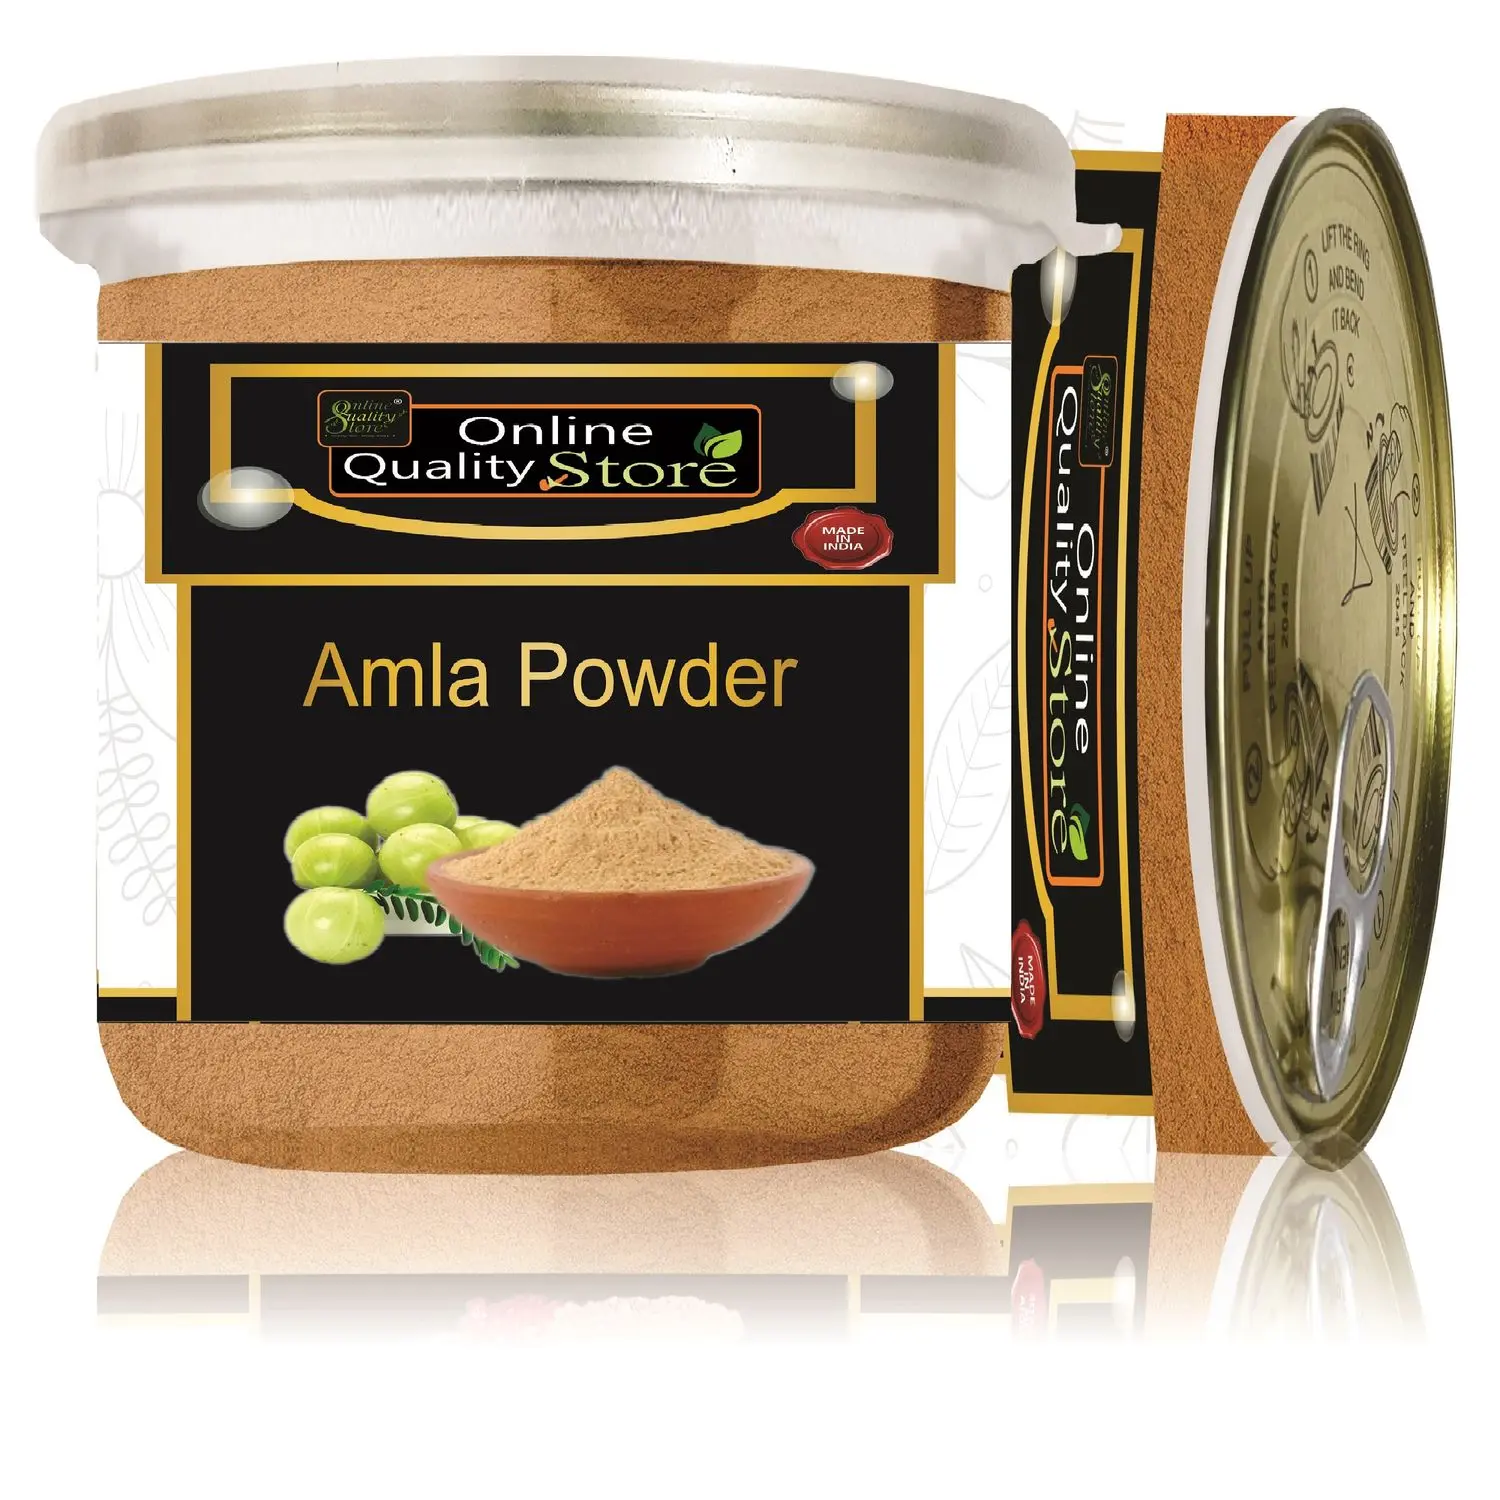 Online Quality Store Amla Powder - 100 g |Amla powder |Organic Amla Indian Gooseberry Powder for Hair and skin |amla powder for hair growth organic |indian gooseberry {jar_Amla_100g}